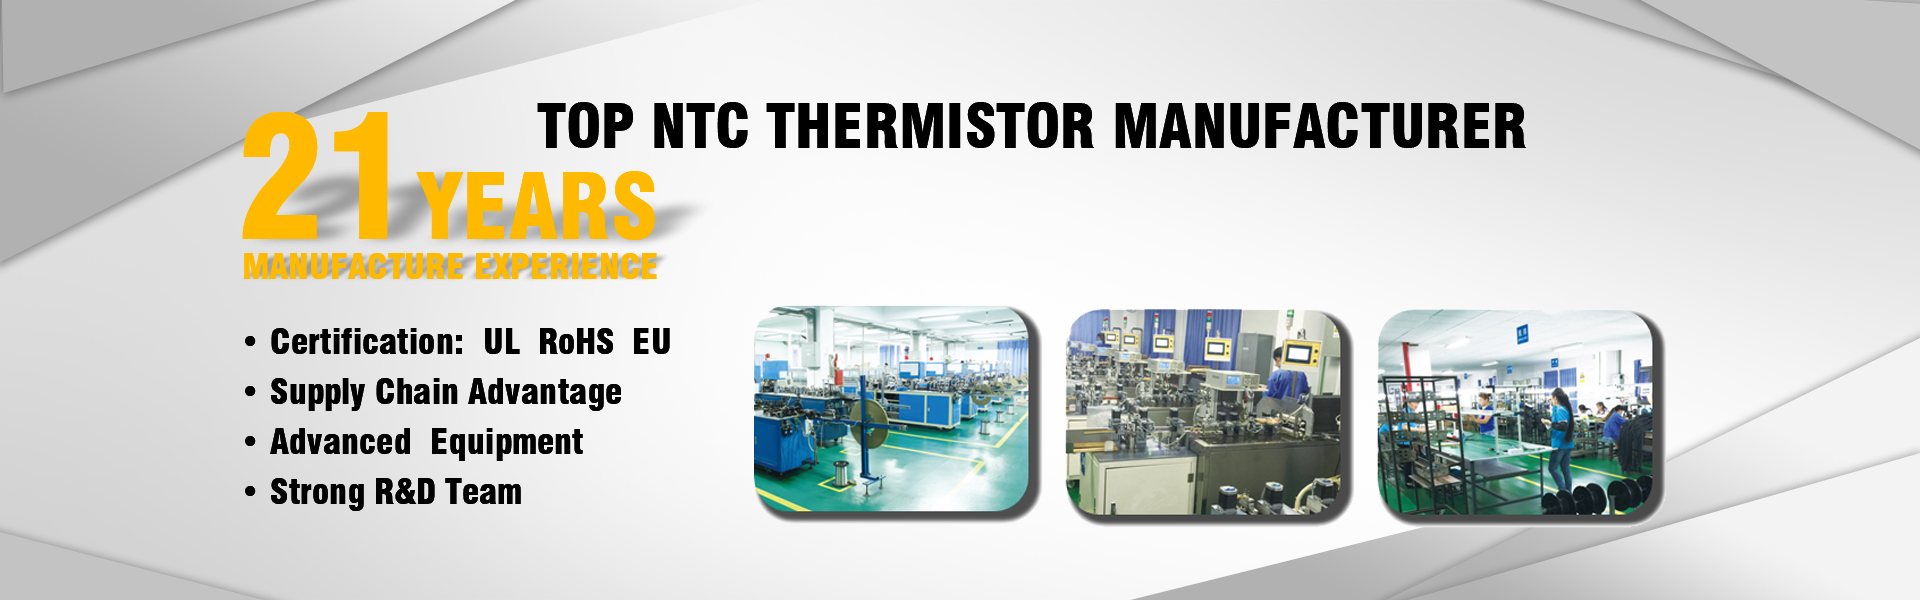 Produttore di termistore NTC, sensore di temperatura, alta precisione,GUANGDONG XINSHIHENG TECHNOLOGY CO.,LTD